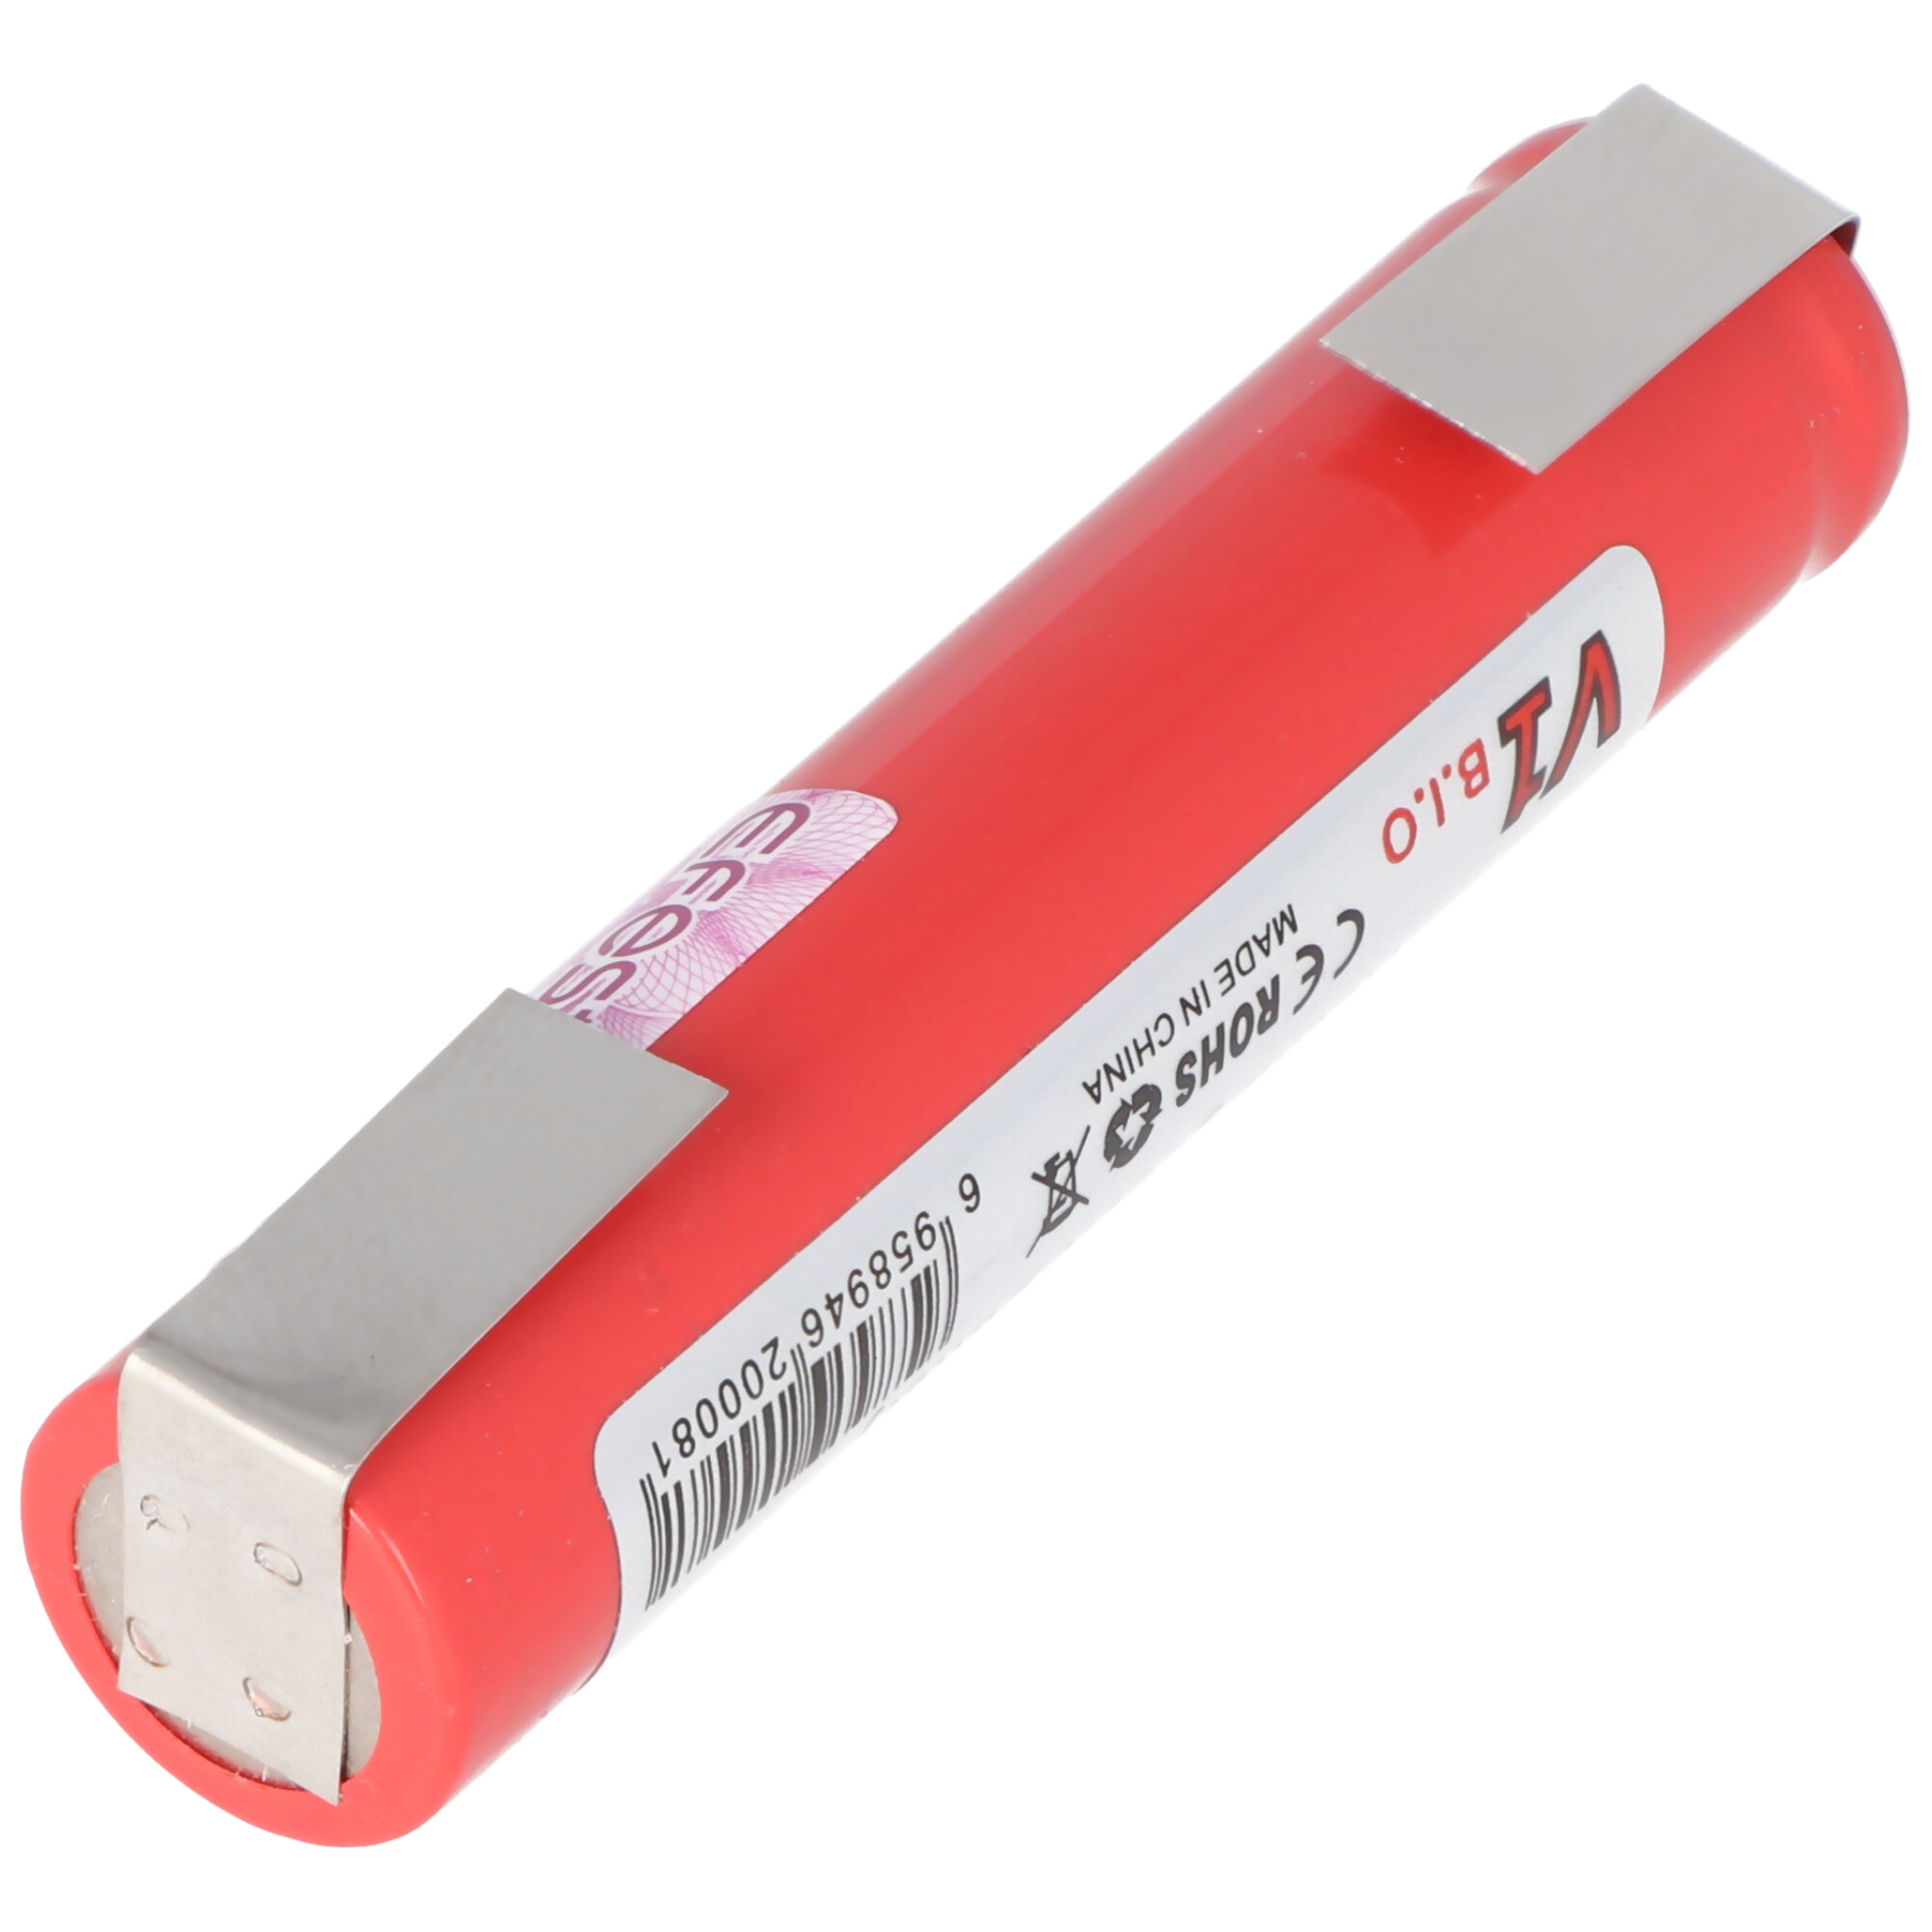 IMR14650 3,7 Volt Lithium Batterie mit Lötfahnen U-Form 65,1x14mm